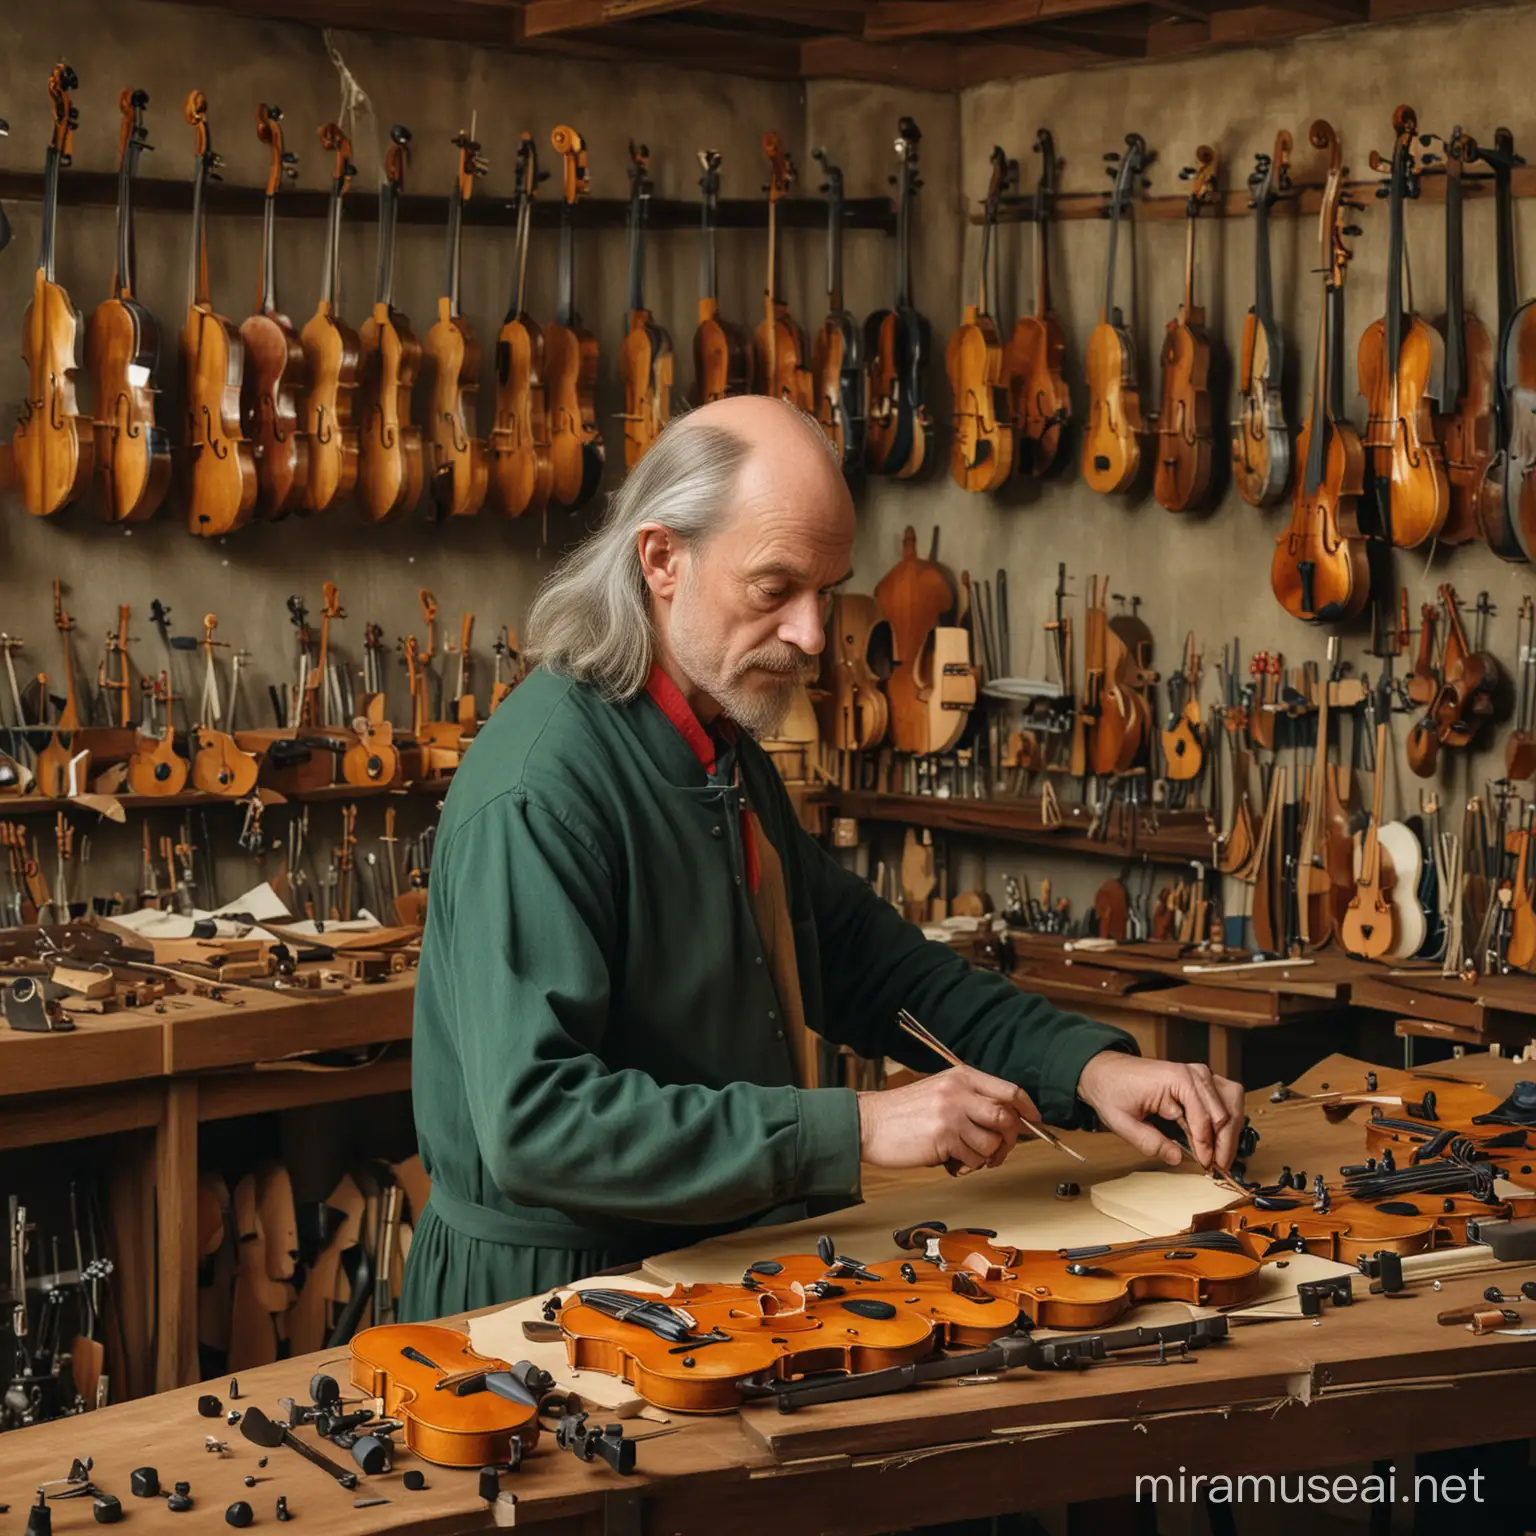 Vibrant Workshop Scene Master Luthier Crafting Violins